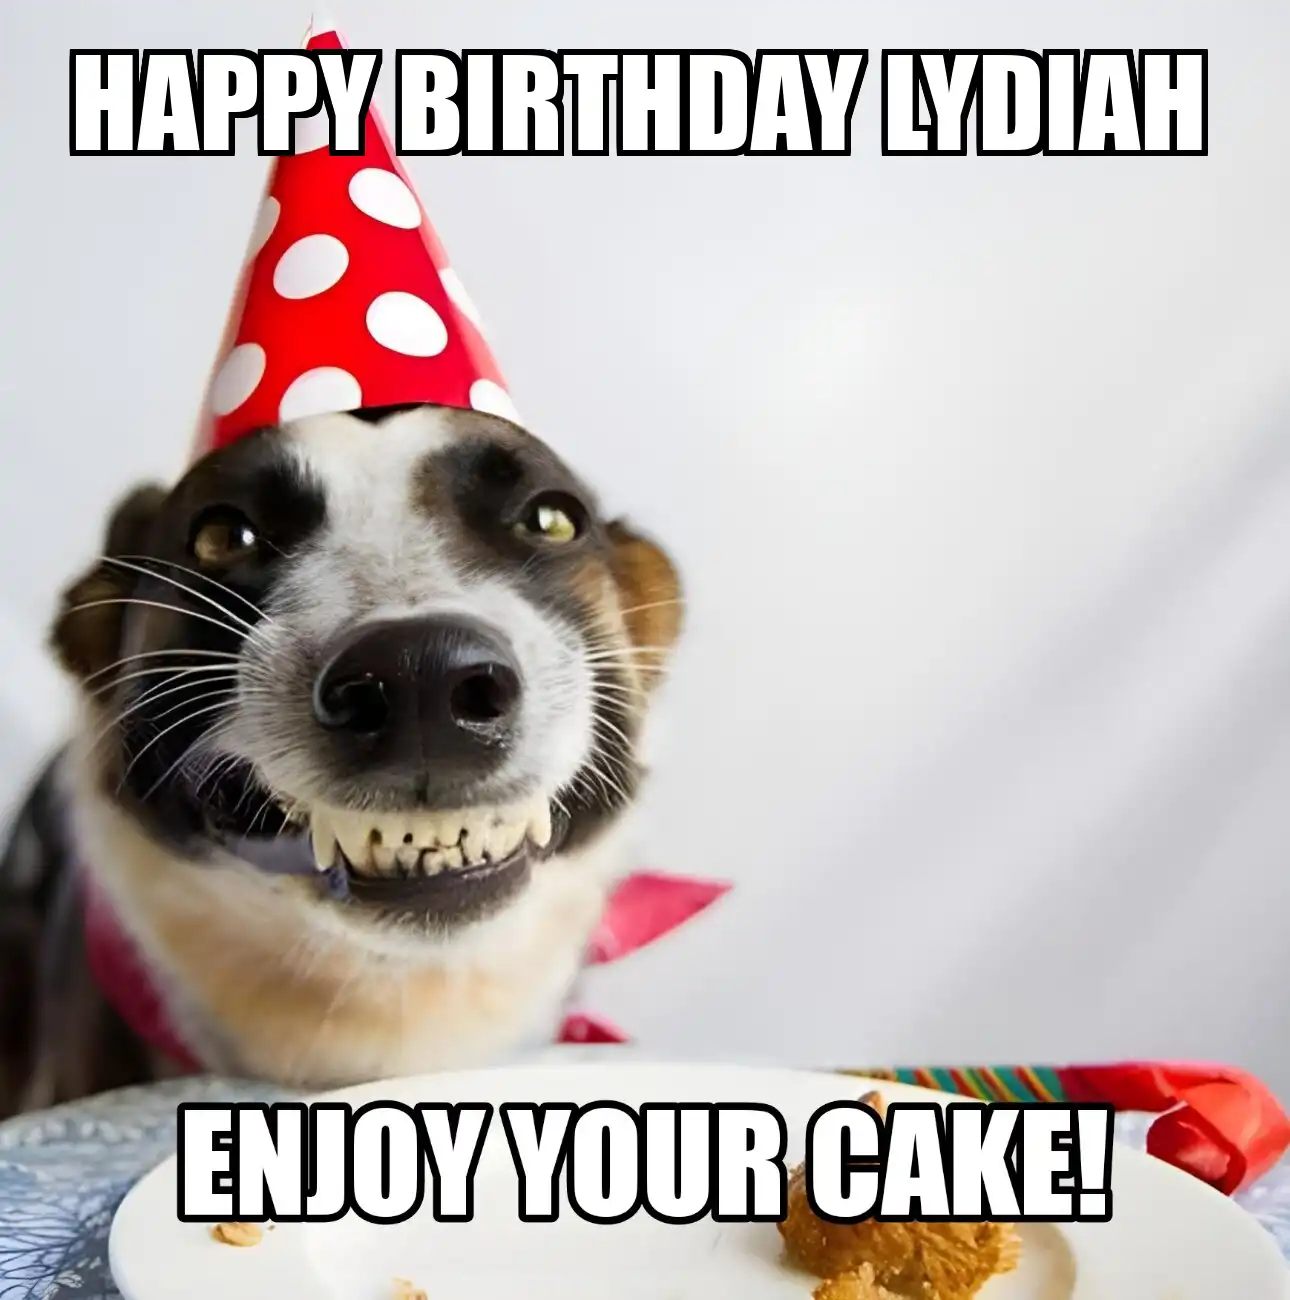 Happy Birthday Lydiah Enjoy Your Cake Dog Meme